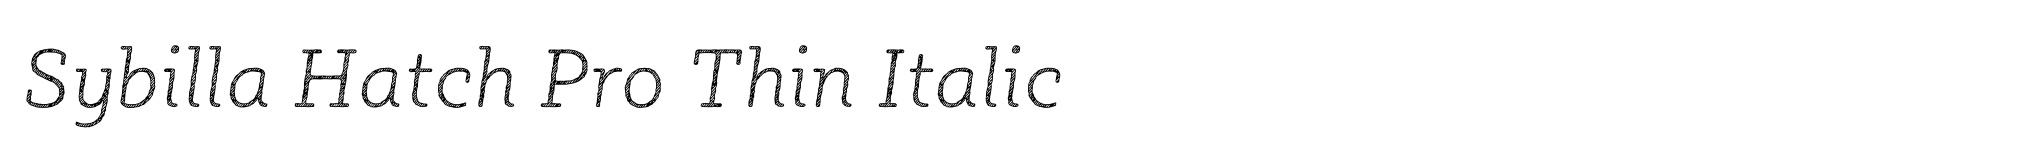 Sybilla Hatch Pro Thin Italic image